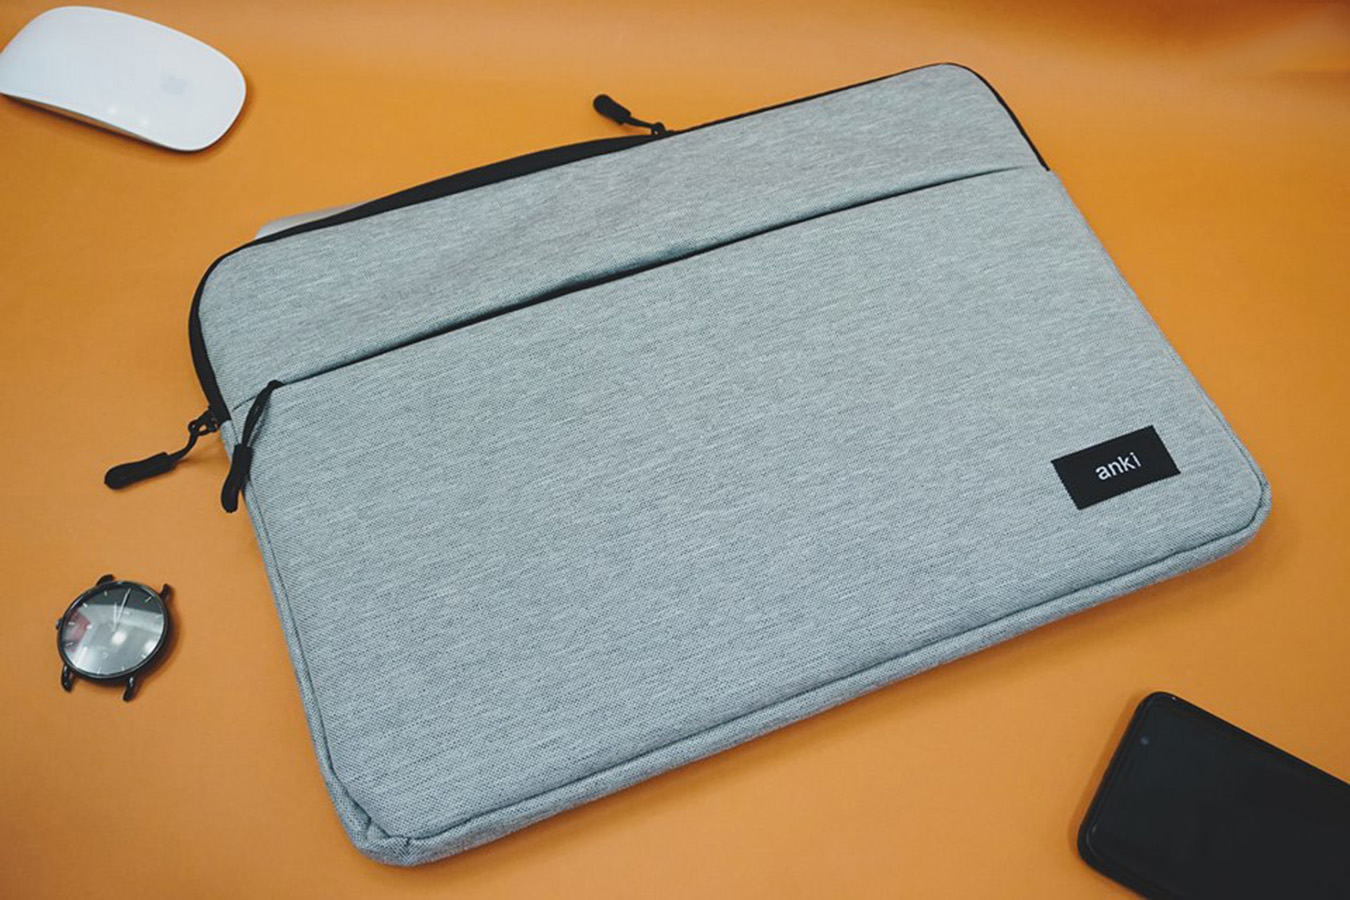 Túi chống sốc hiệu AnKi cho Laptop, Macbook